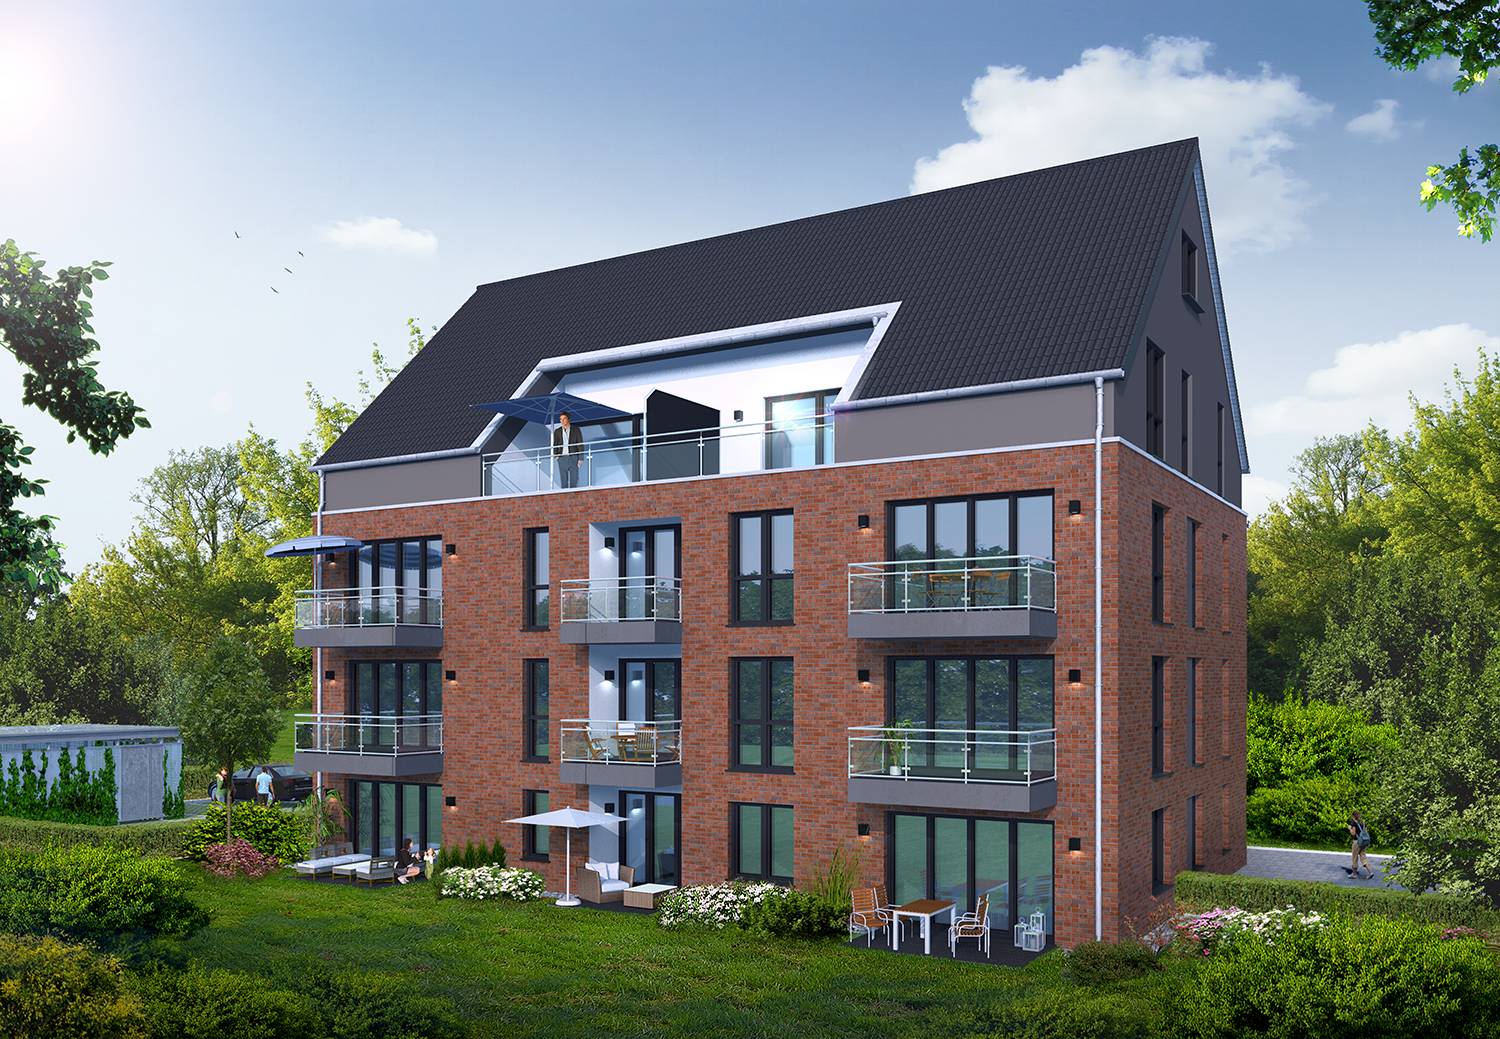 Architekturvisualisierung Balkonen-/Terrassenblick eines Neubaus des Mehrfamilienhauses mit 11 WE und Abstellräumen in Kirchweg 65, 24558 Henstedt-Ulzburg. Visualisierung wurde von der Firma ProQuartis GmbH aus 48527 Nordhorn im Jahre 2022 beauftragt.